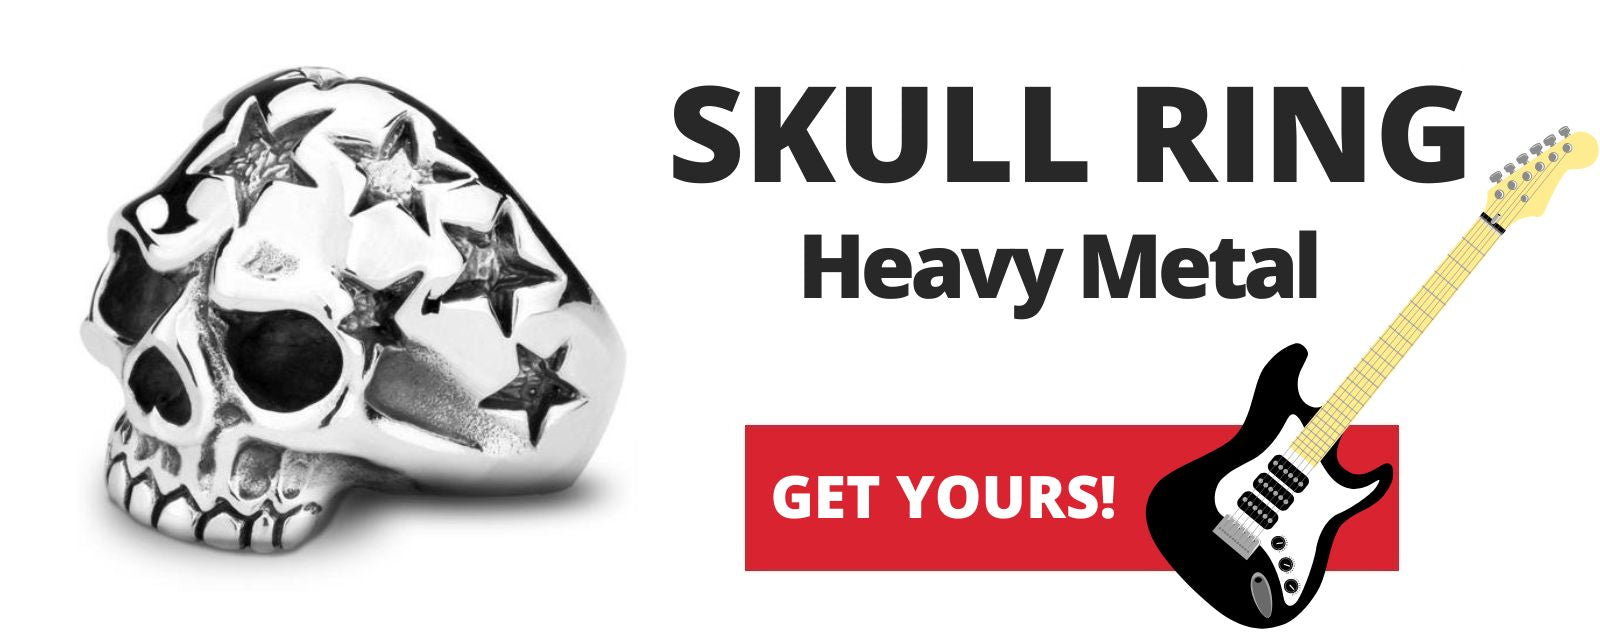 skull-ring-heavy-metal